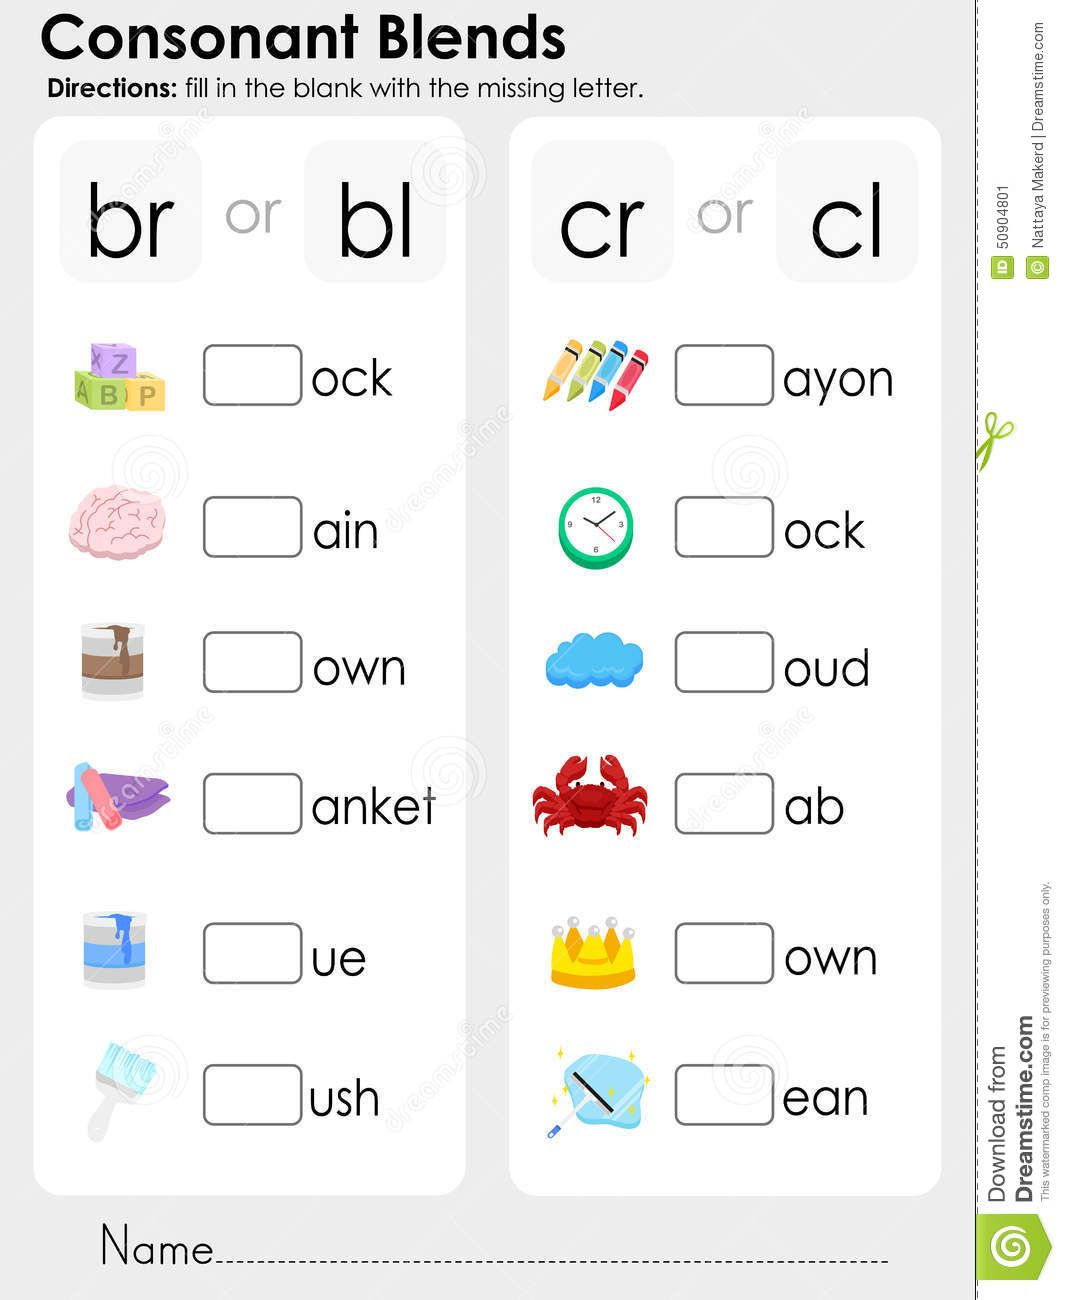 Consonant Blends Worksheets For Kindergarten - Scalien throughout Letter Blends Worksheets